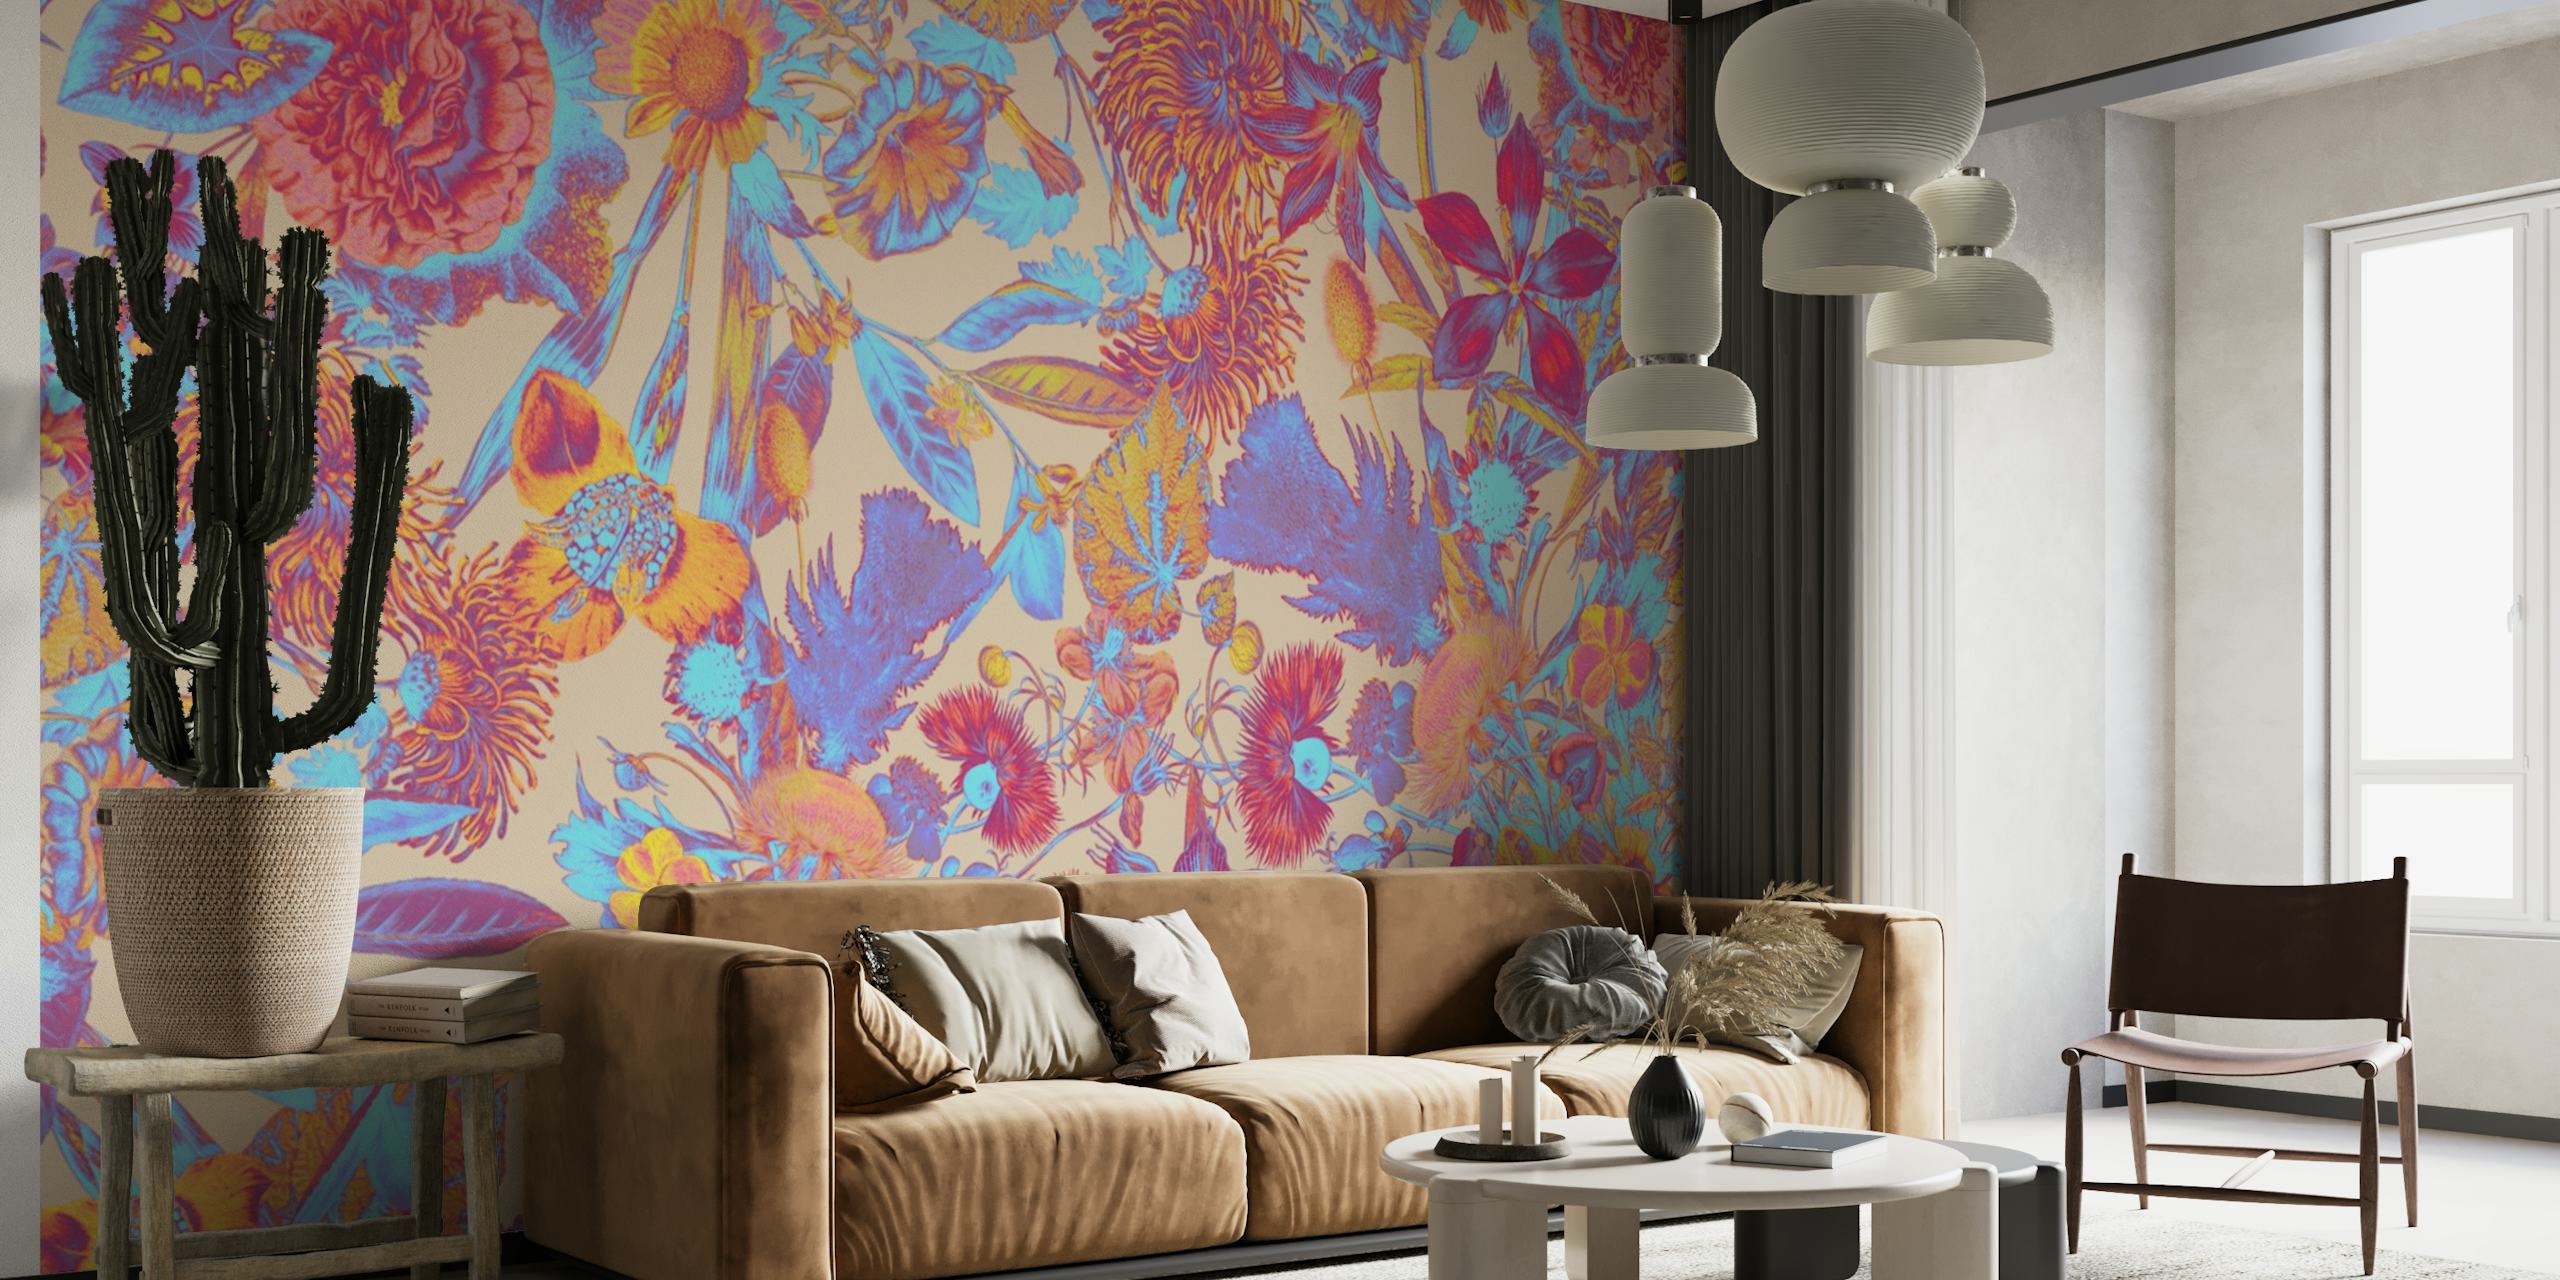 Une fresque murale aux couleurs vives avec un motif floral multicolore complexe.